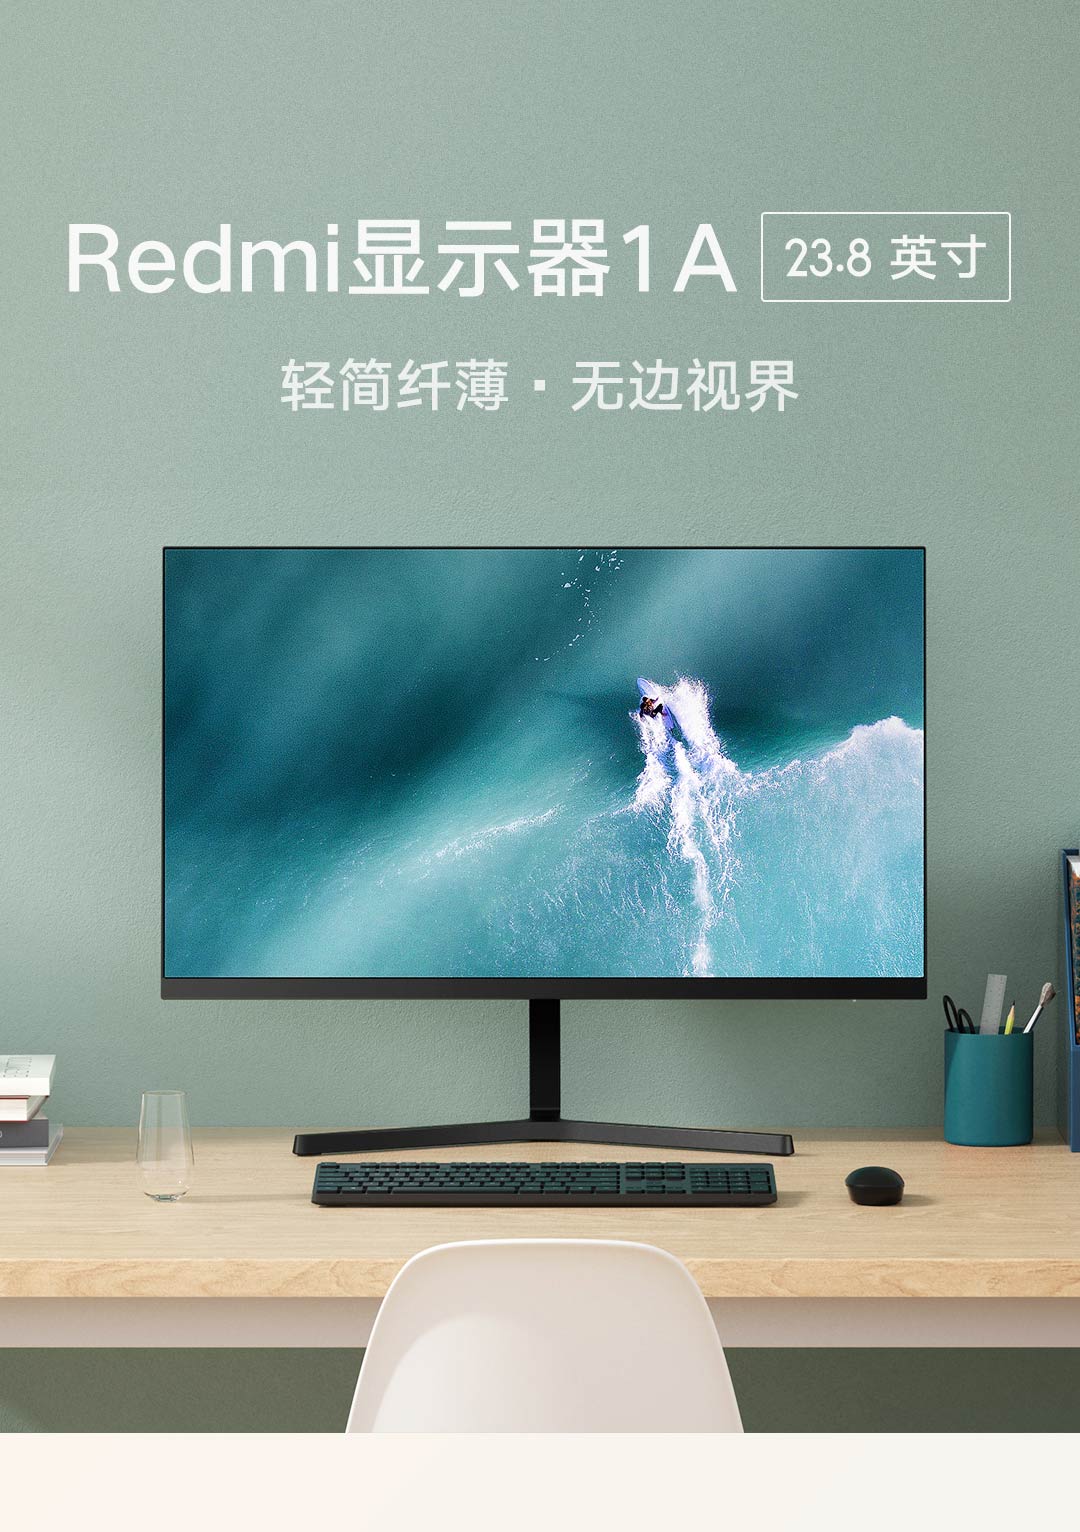 Sforum - Trang thông tin công nghệ mới nhất 40442edbe37e5249ae64aaf434b05640 Redmi ra mắt màn hình giá rẻ: 24 inch, Full HD+, viền siêu mỏng, giá chỉ 1.6 triệu đồng 